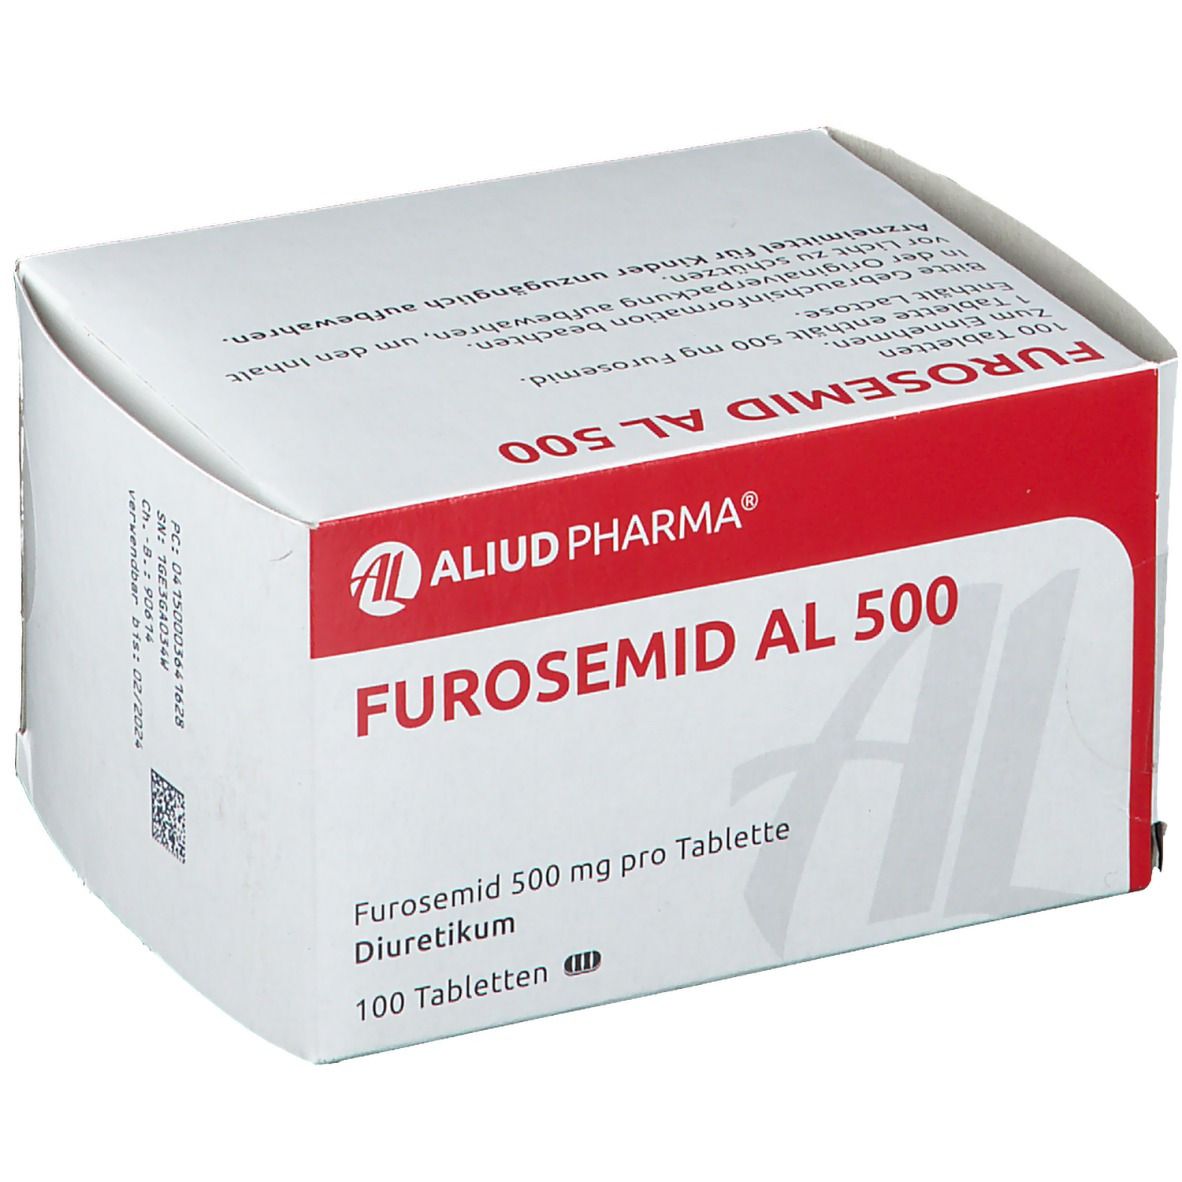 Furosemid AL 500